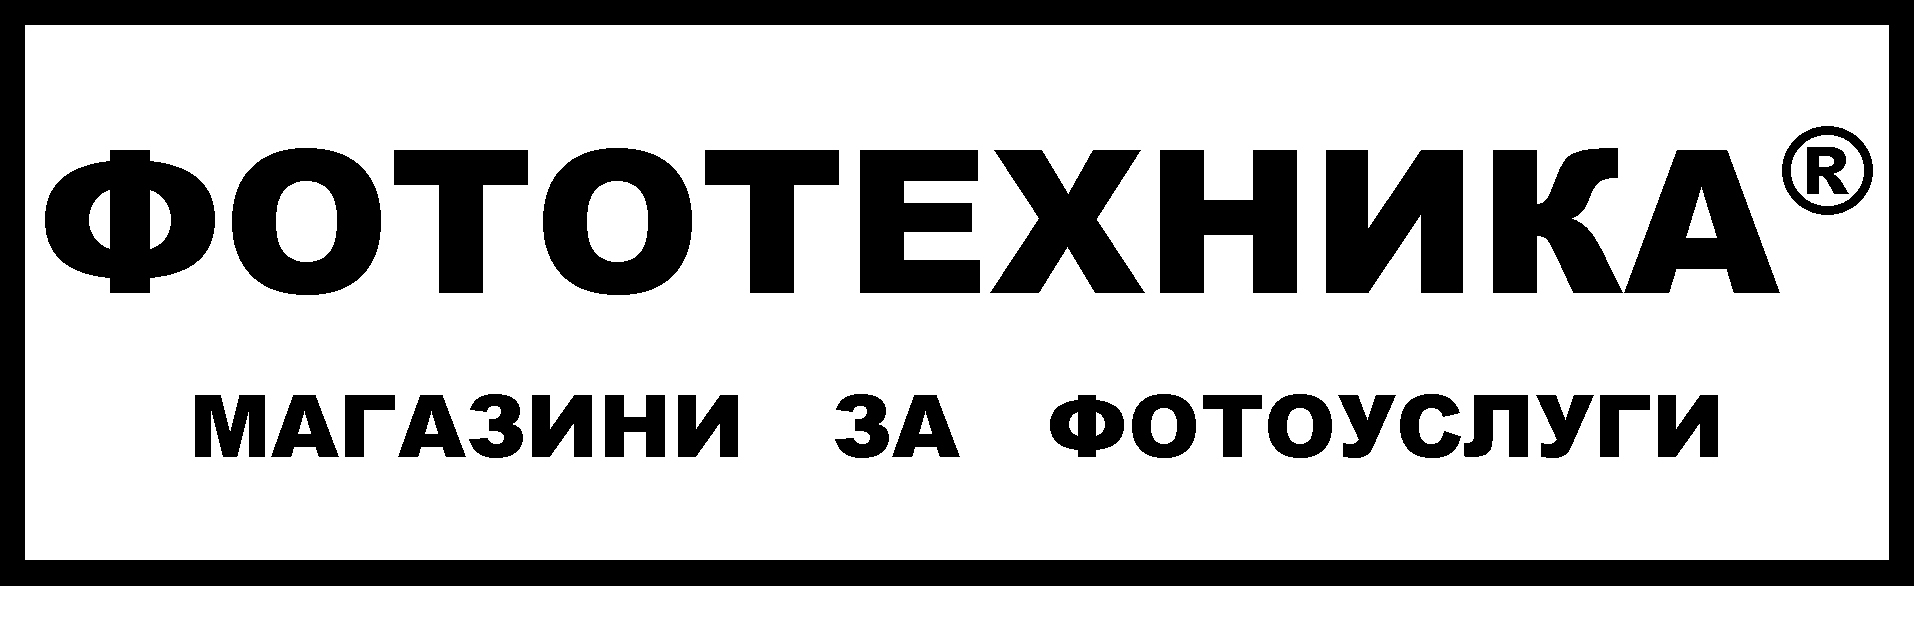 Лого на ФОТОТЕХНИКА-01 ООД